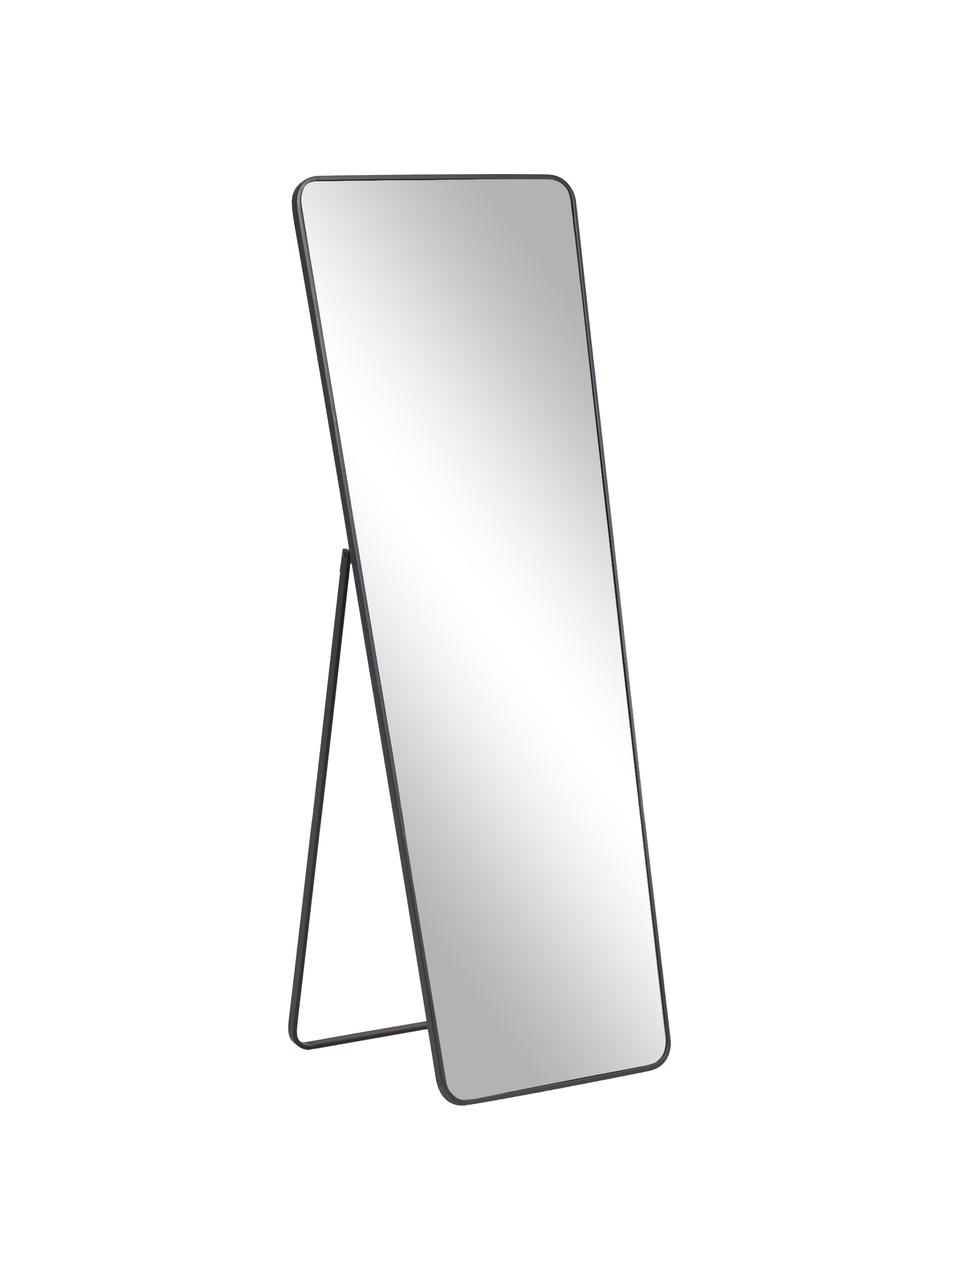 Standspiegel Nyah mit schwarzem Metallrahmen, Rahmen: Metall, beschichtet, Spiegelfläche: Spiegelglas, Schwarz, B 64 x H 170 cm